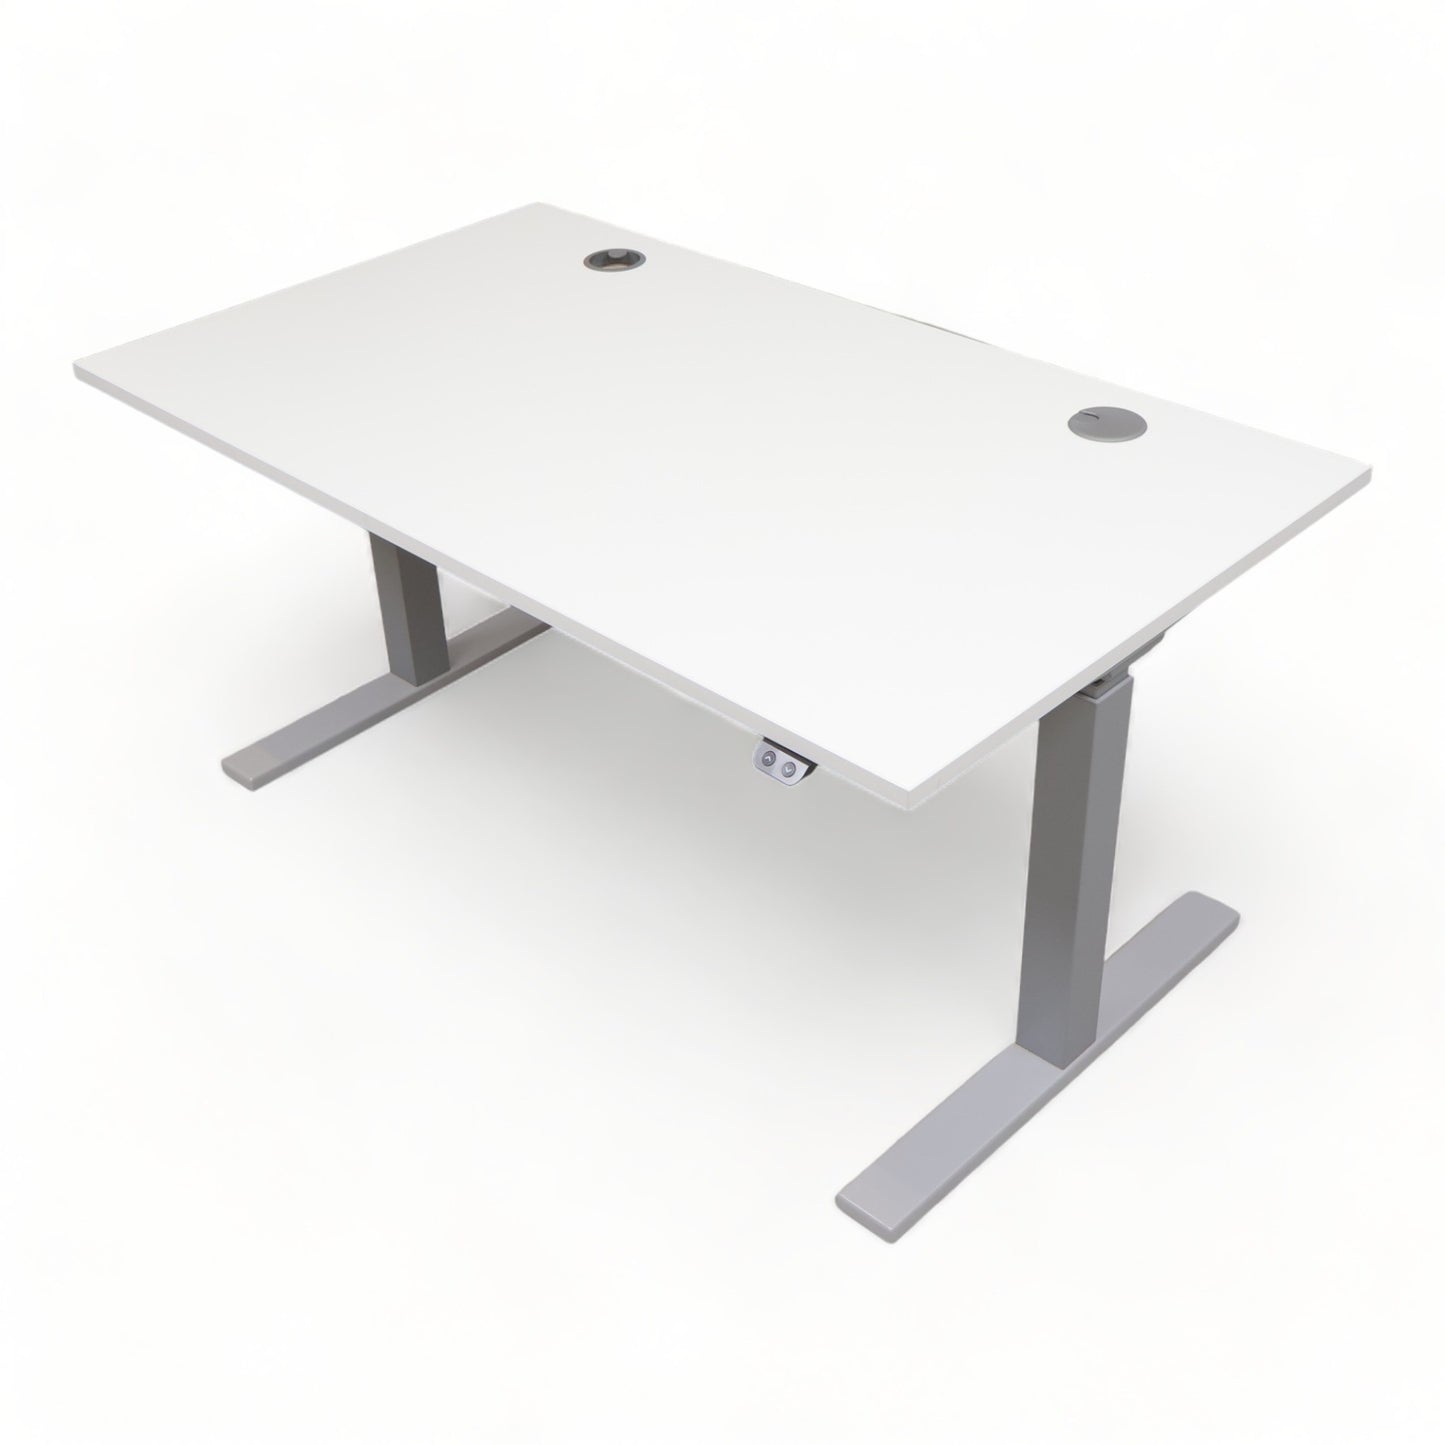 Kvalitetssikret | Svenheim elektrisk hev/senk bord fra 2021, 140×80 - Secundo